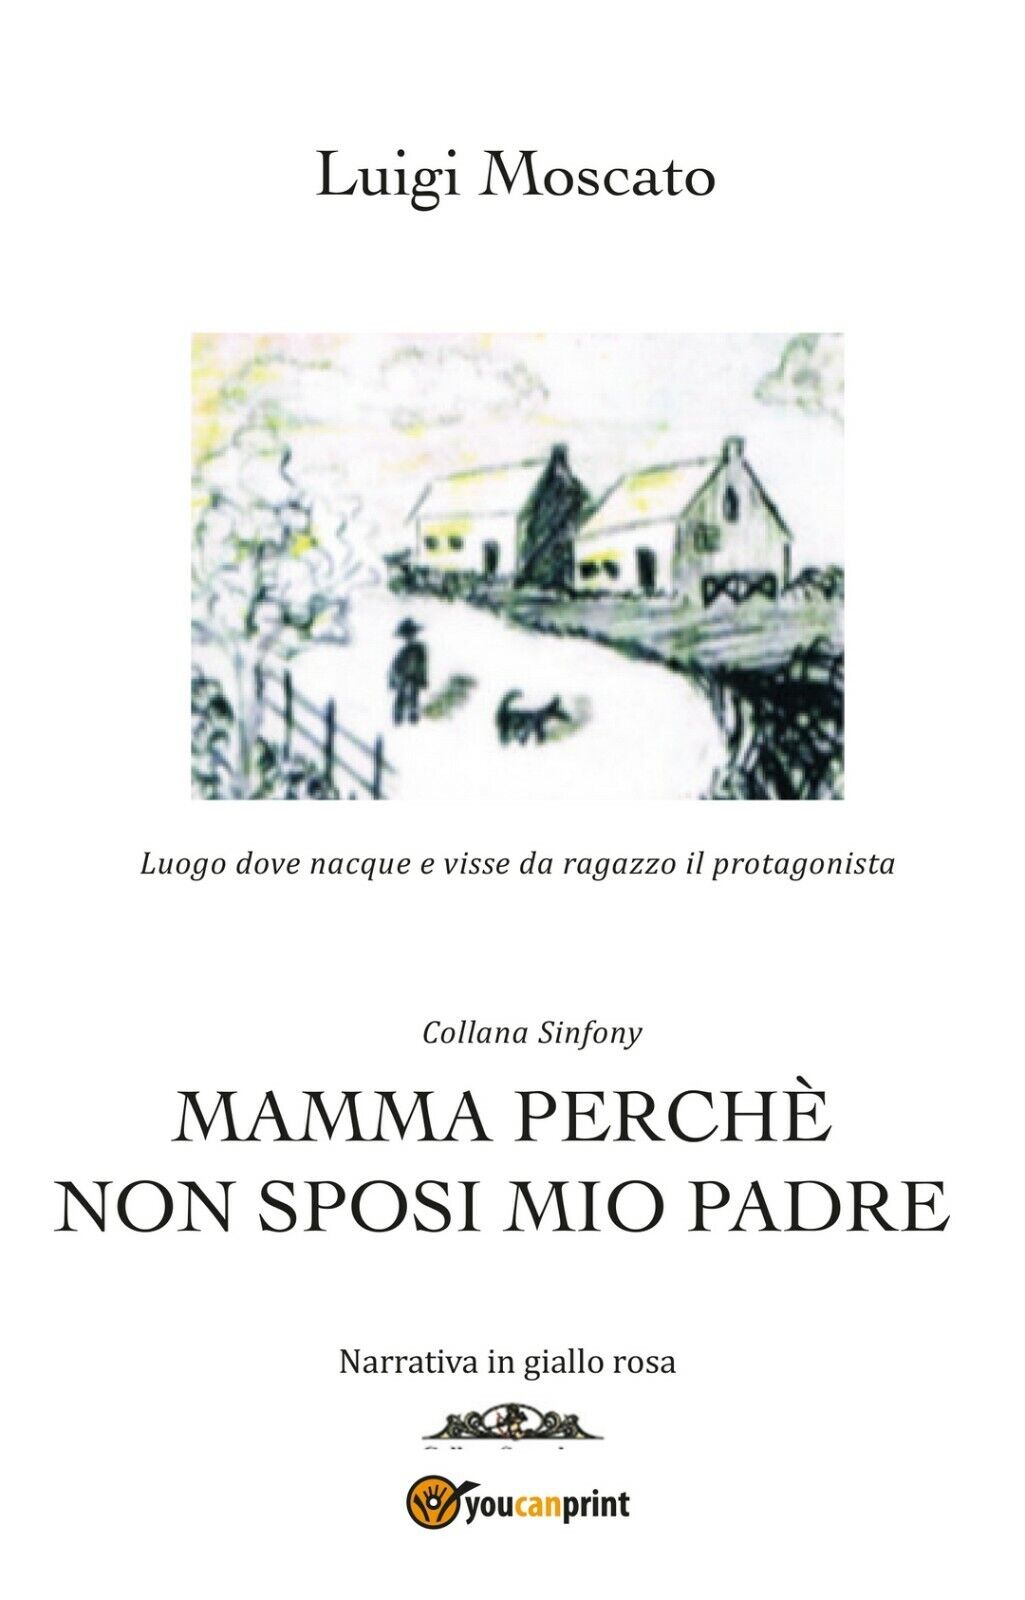 Mamma perch? non sposi mio padre  di Luigi Moscato,  2020,  Youcanprint